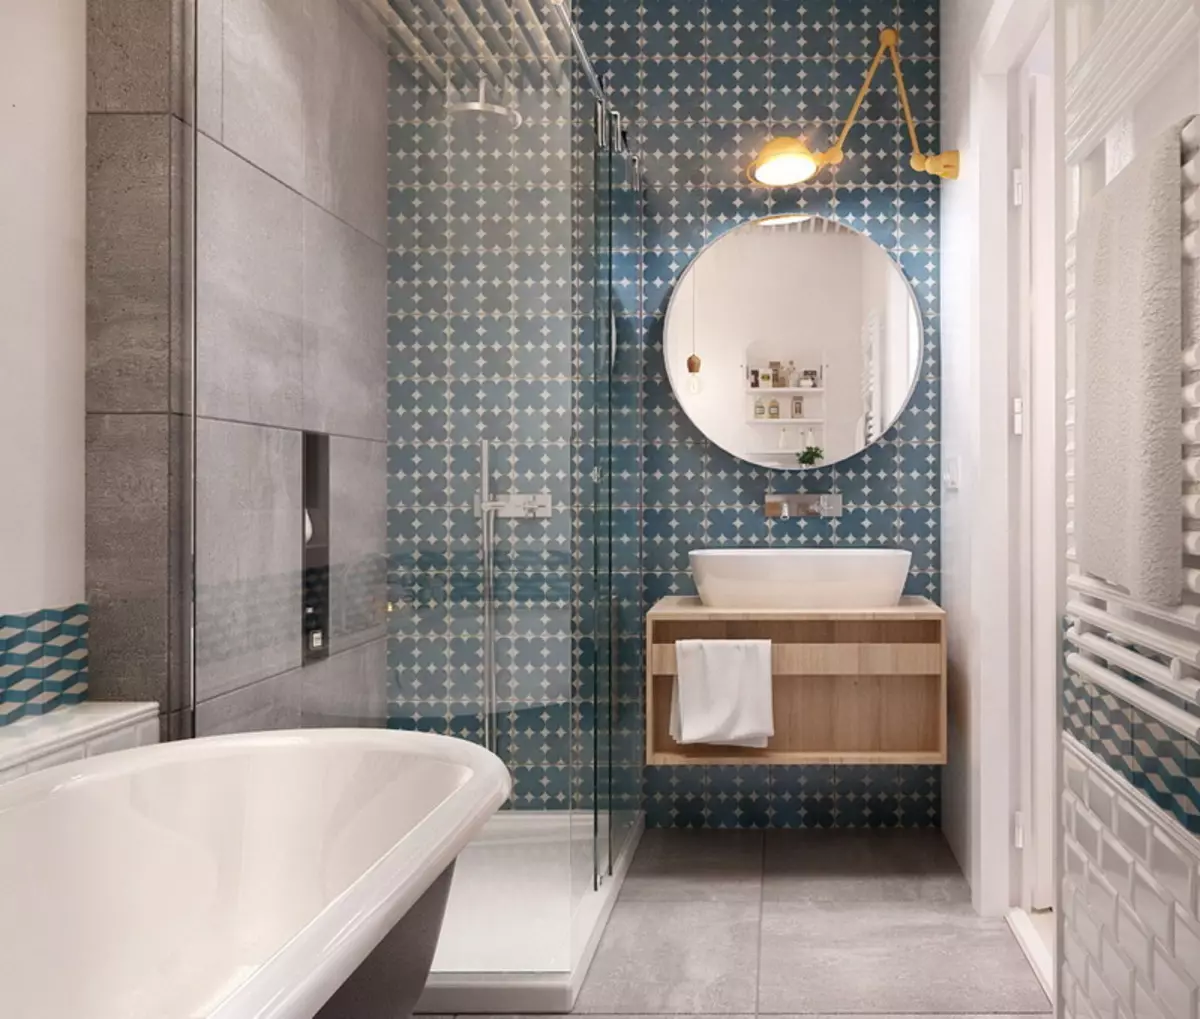 Badezimmer im skandinavischen Stil (66 Fotos): Innenarchitektur von einem kleinen Raum 3 und 4 Quadratmetern. M, die Ideen des Designs eines weißen Badezimmers, der Wahl des Zubehörs 21439_19